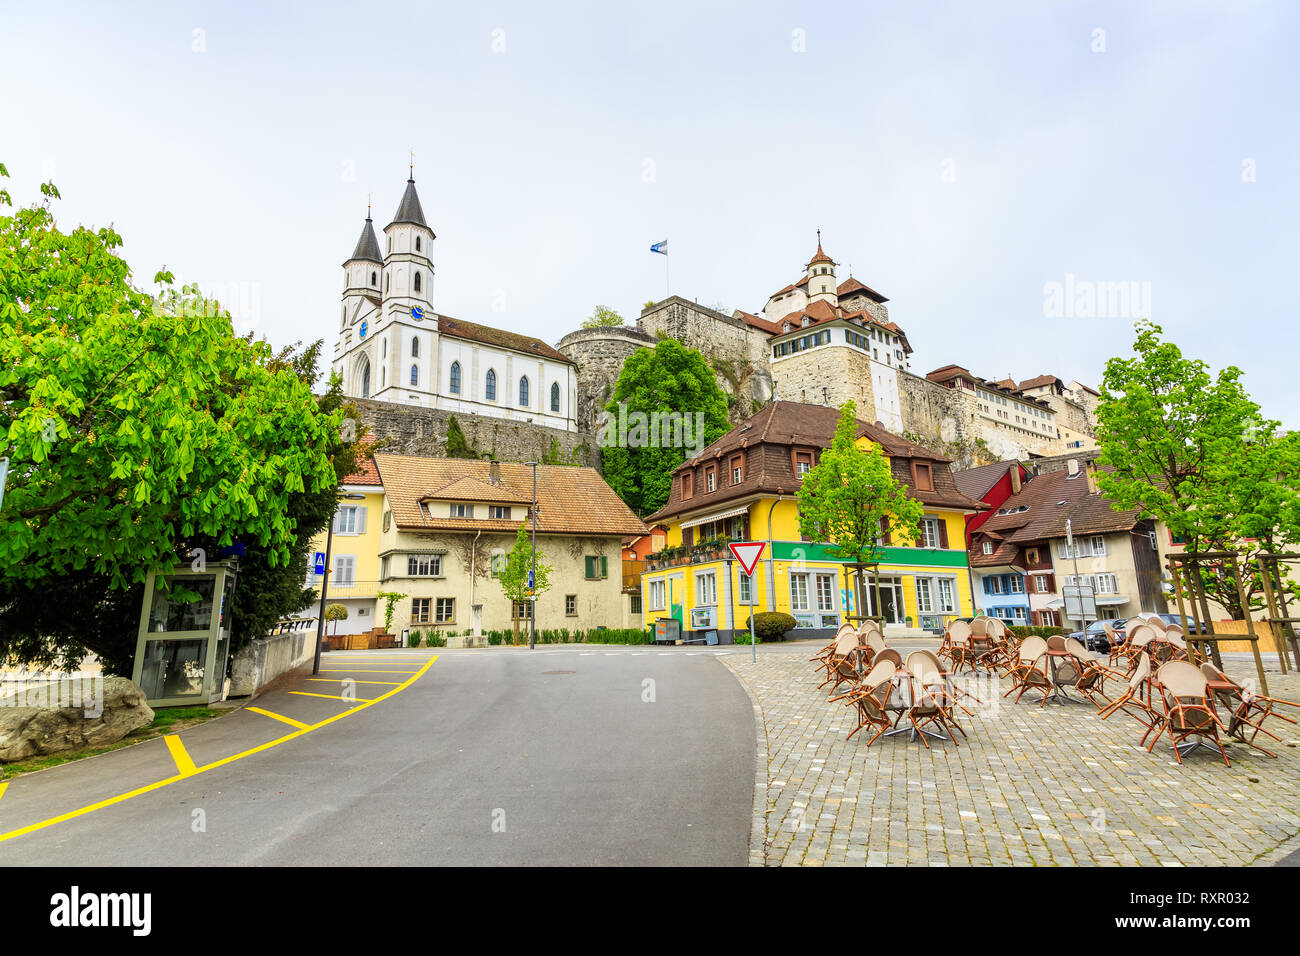 Aarburg old town in canton of Aargau, Switzerland Stock Photo